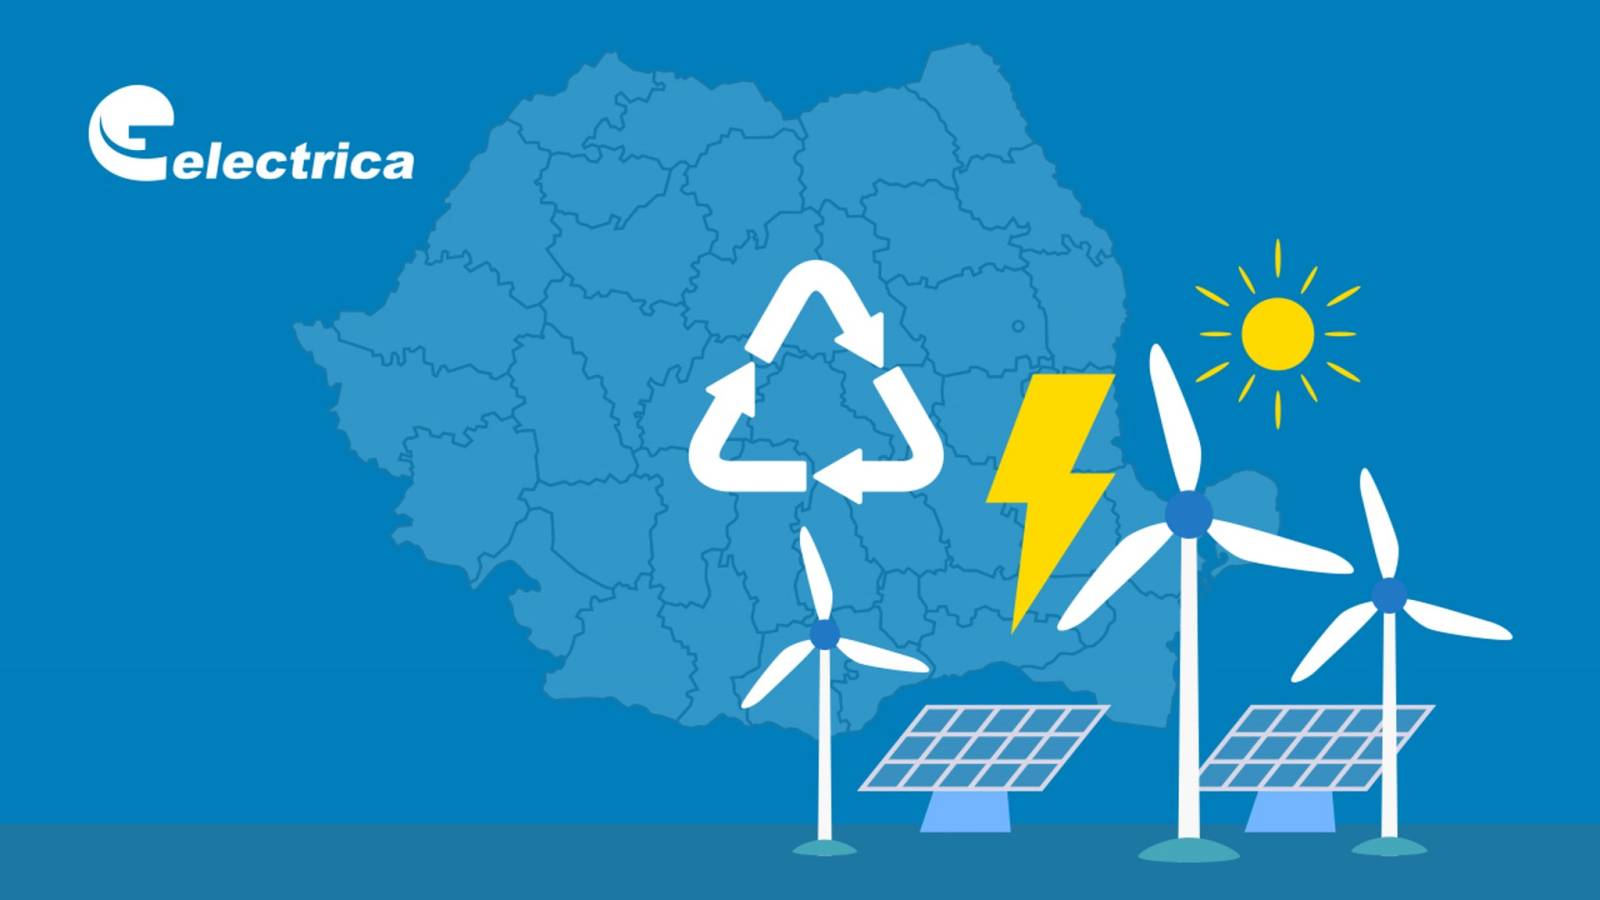 Messaggio ufficiale di Electrica LAST TIME Grande importanza per i clienti rumeni